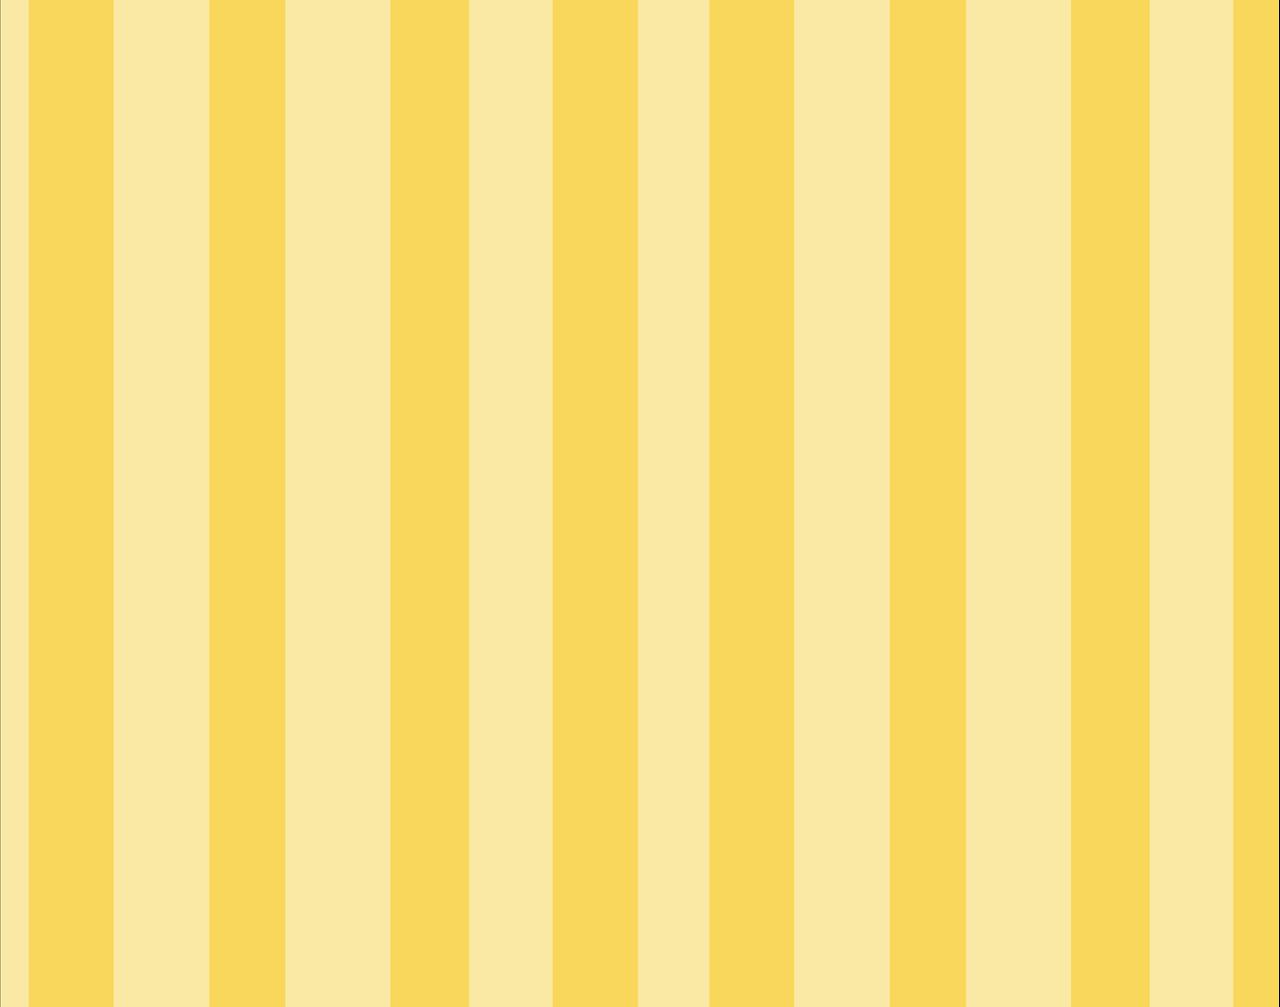 Màu vàng rực rỡ trên sọc đen trắng tạo nên một sự kết hợp đầy sáng tạo cho bức ảnh. Tại sao không cùng chiêm ngưỡng hình ảnh liên quan đến sọc vàng nổi bật này để khám phá cách ghép nối và tạo nên sự tương phản độc đáo cho thiết kế của bạn?